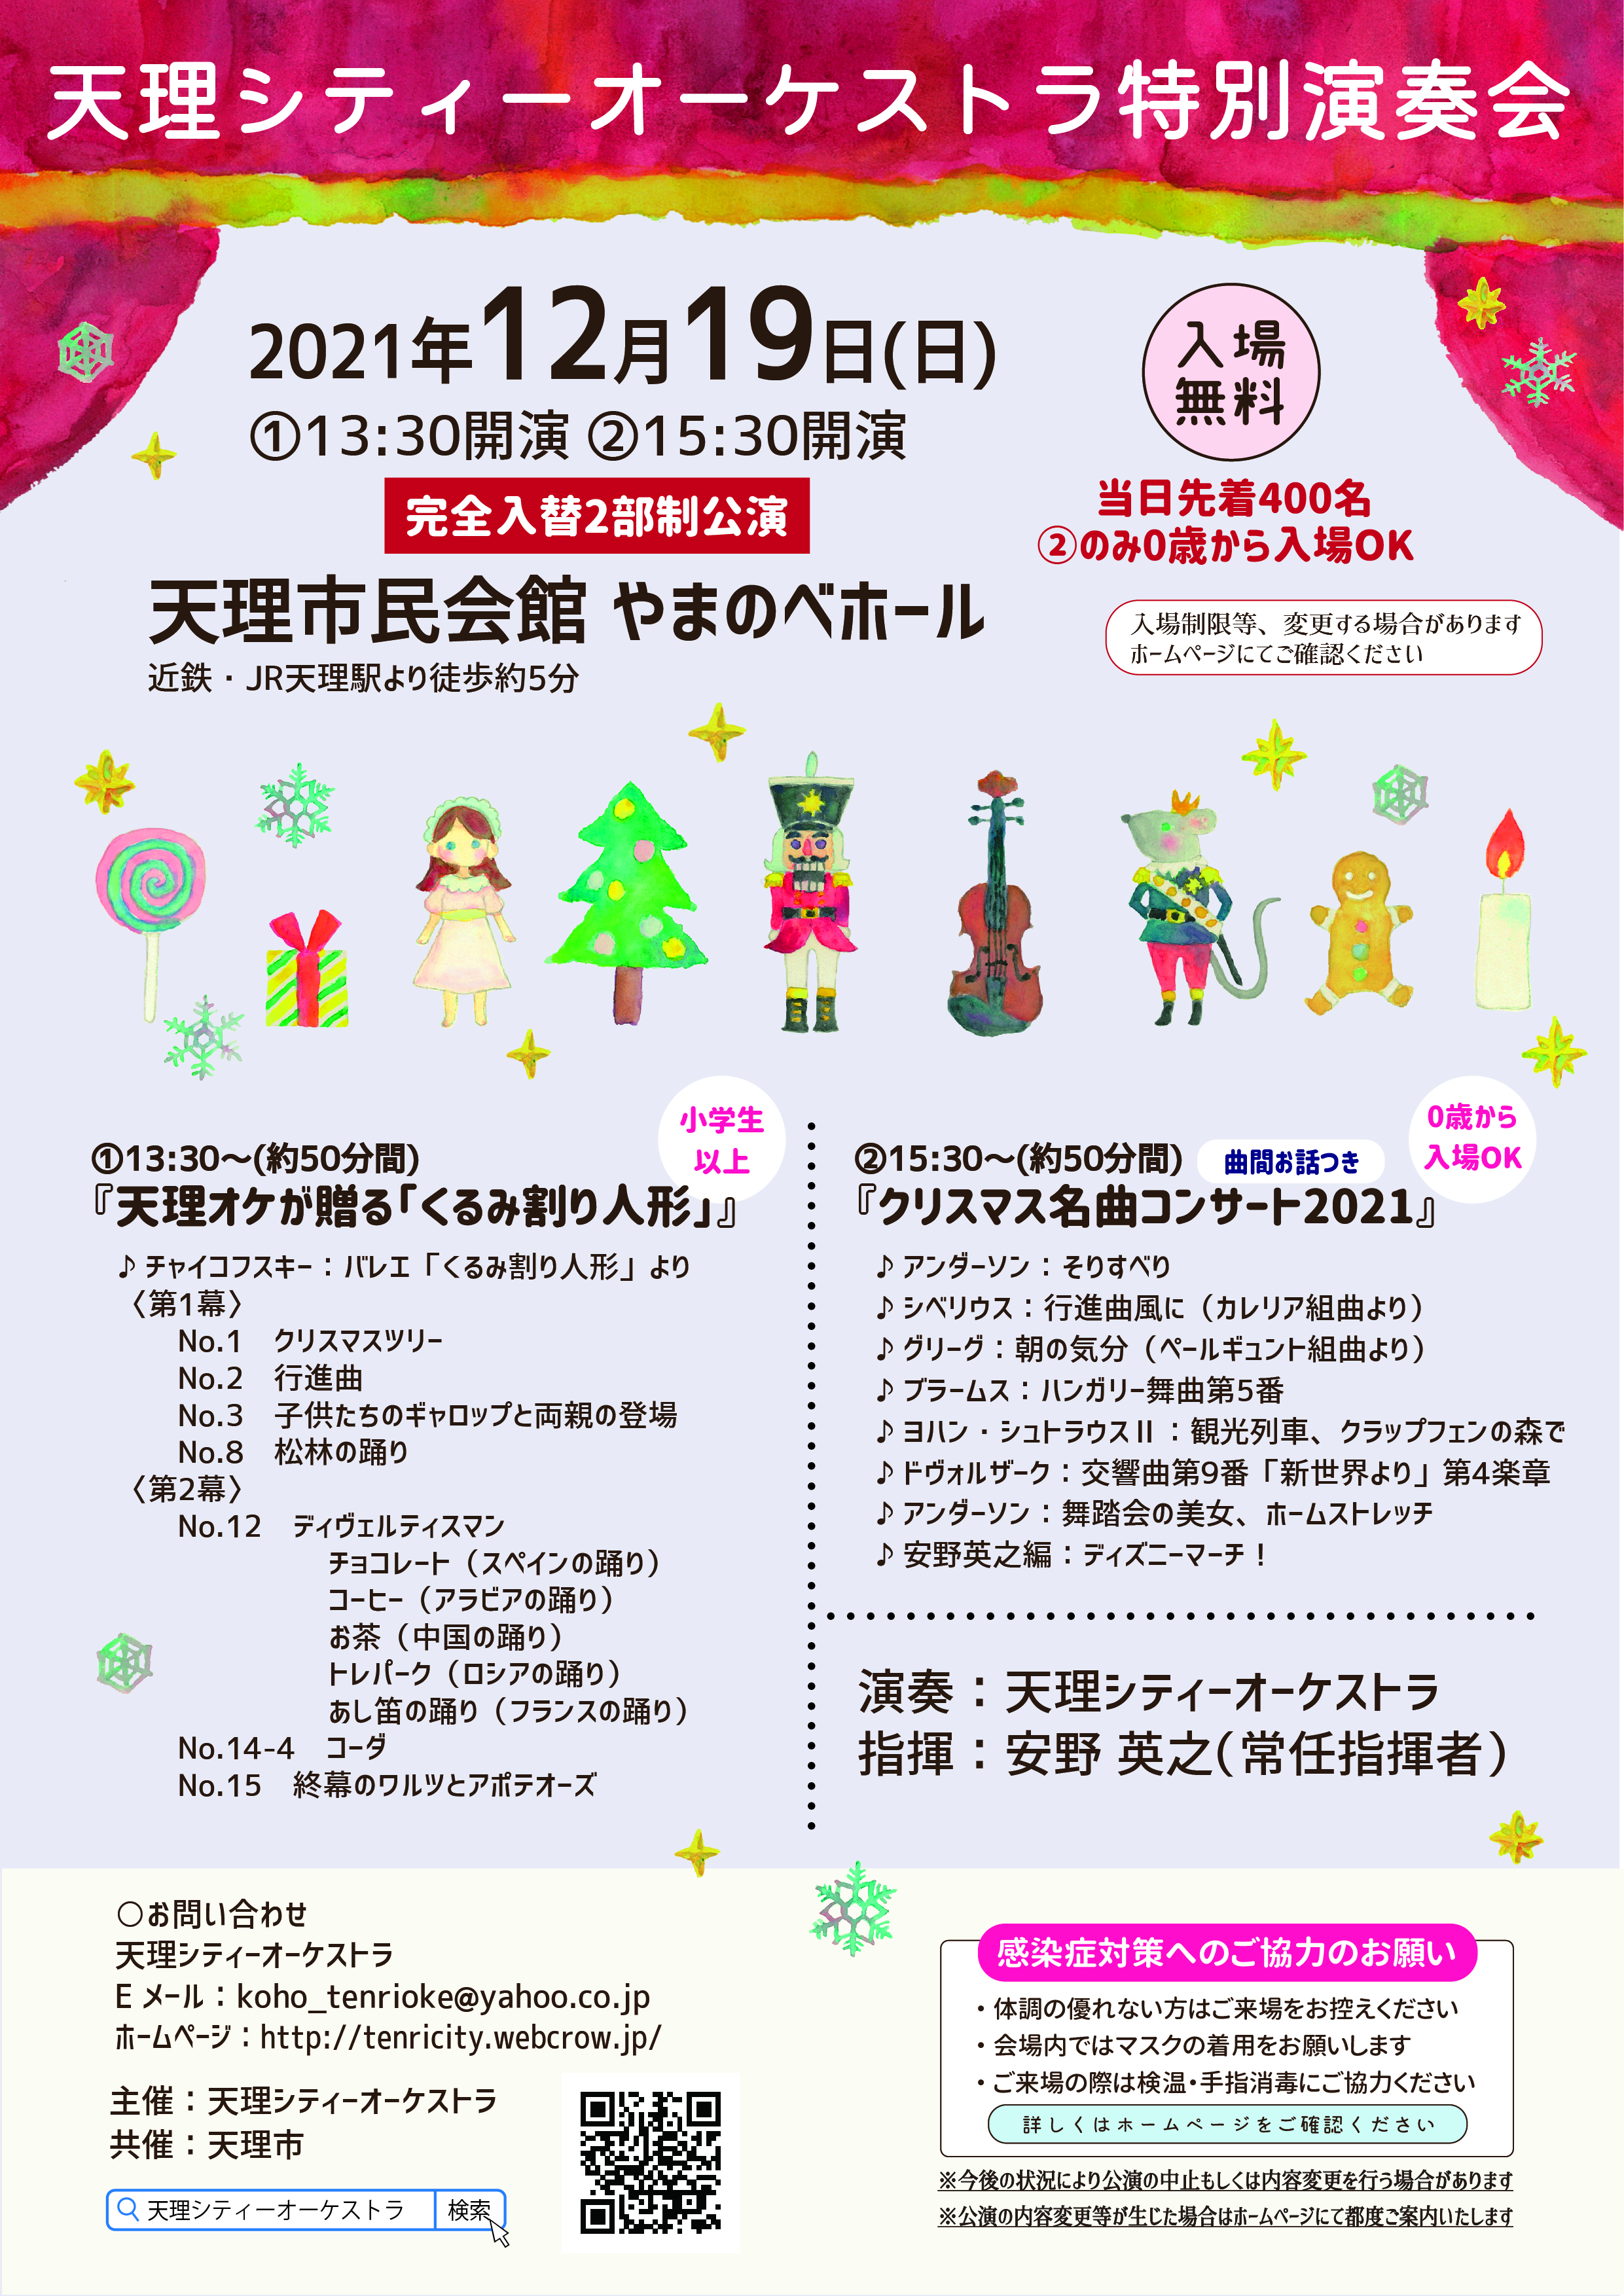 天理シティーオーケストラ特別演奏会『クリスマス名曲コンサート2021』の画像